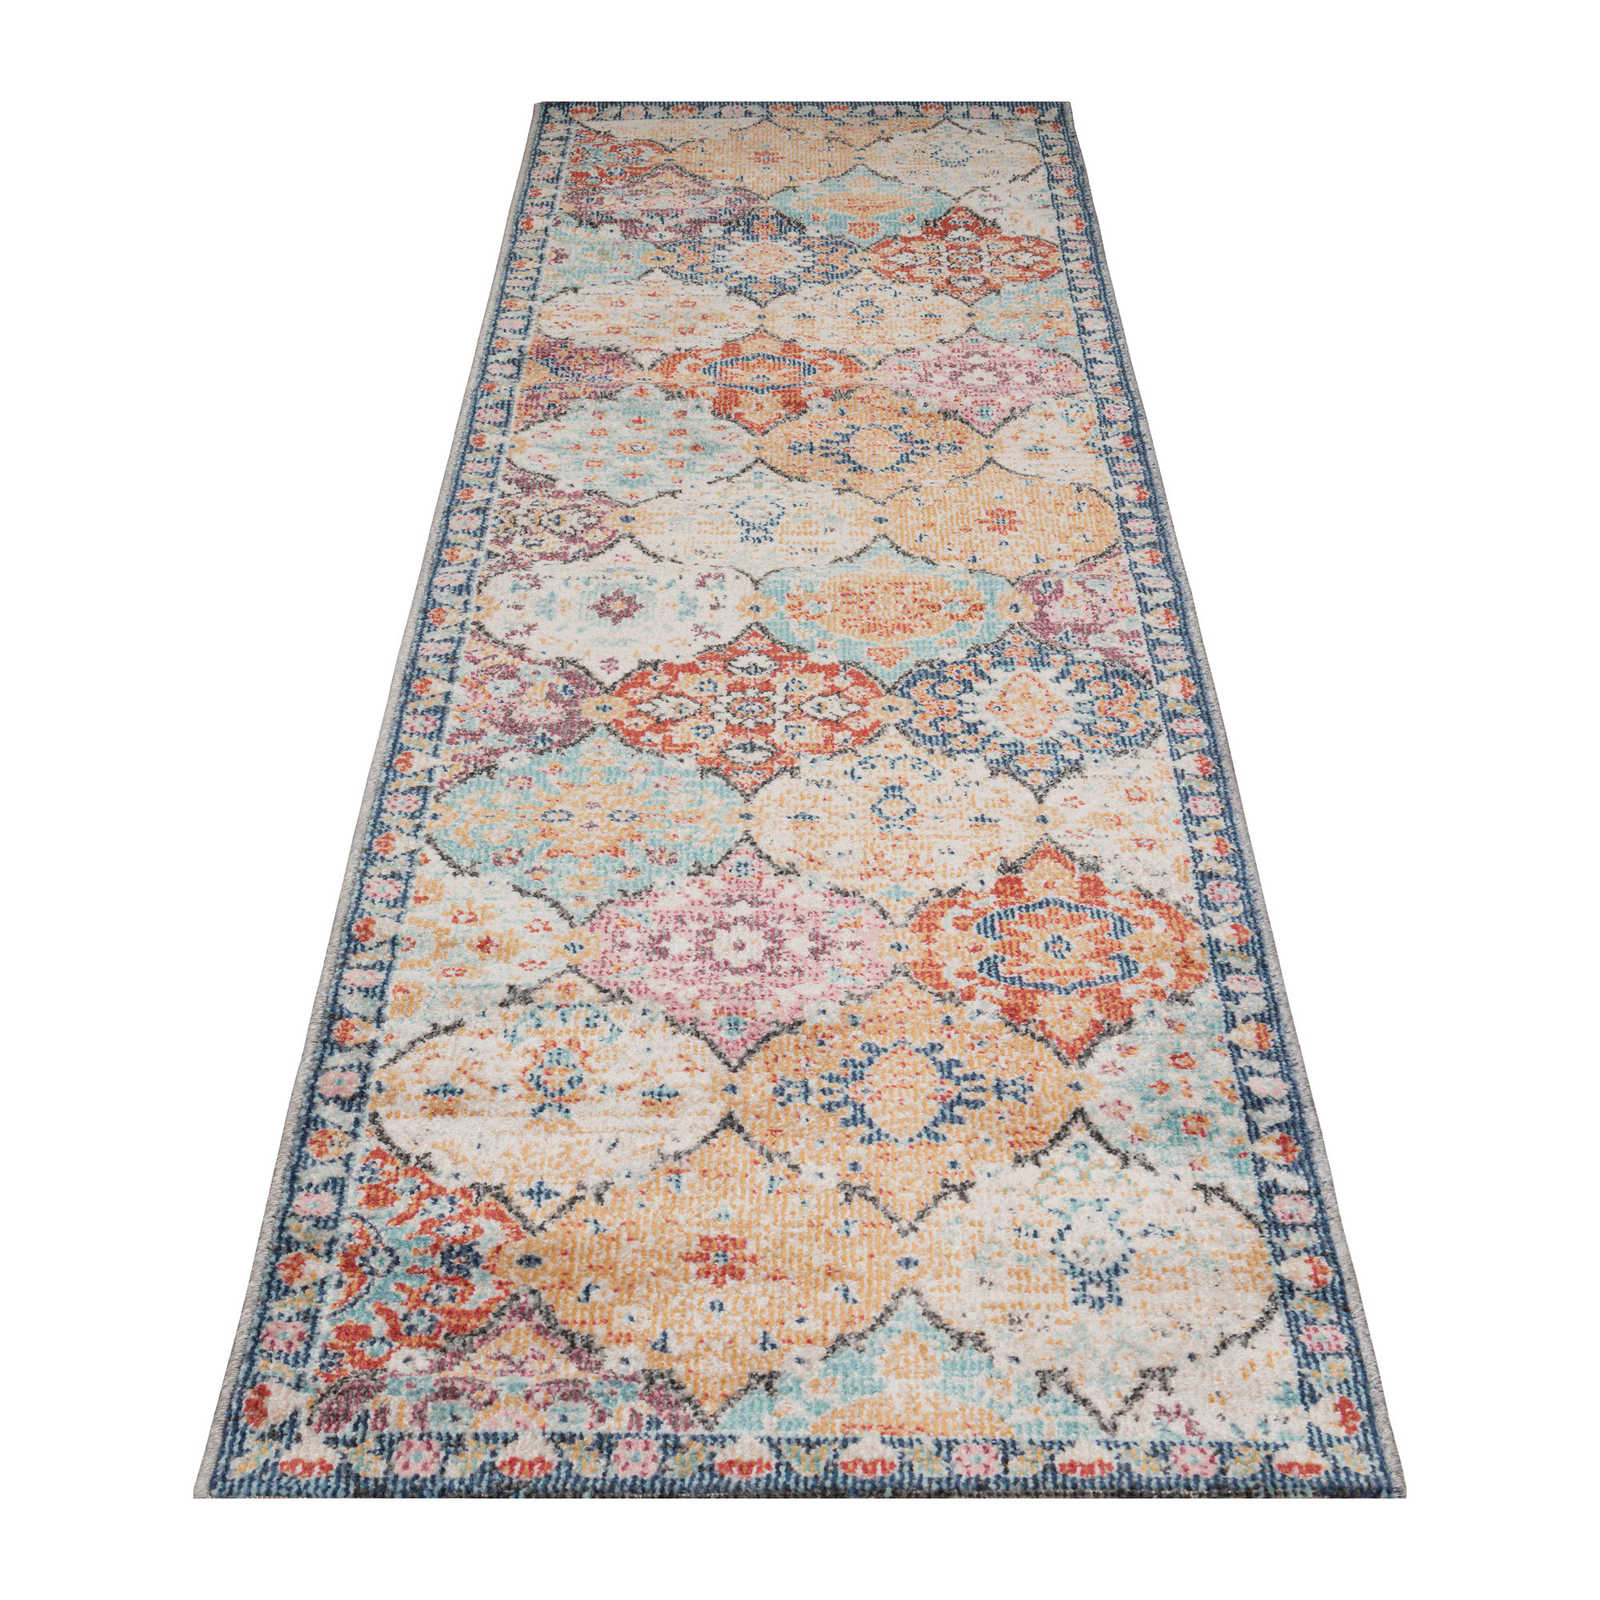 Bunter Teppich aus Flachgewebe als Läufer – 300 x 80 cm
